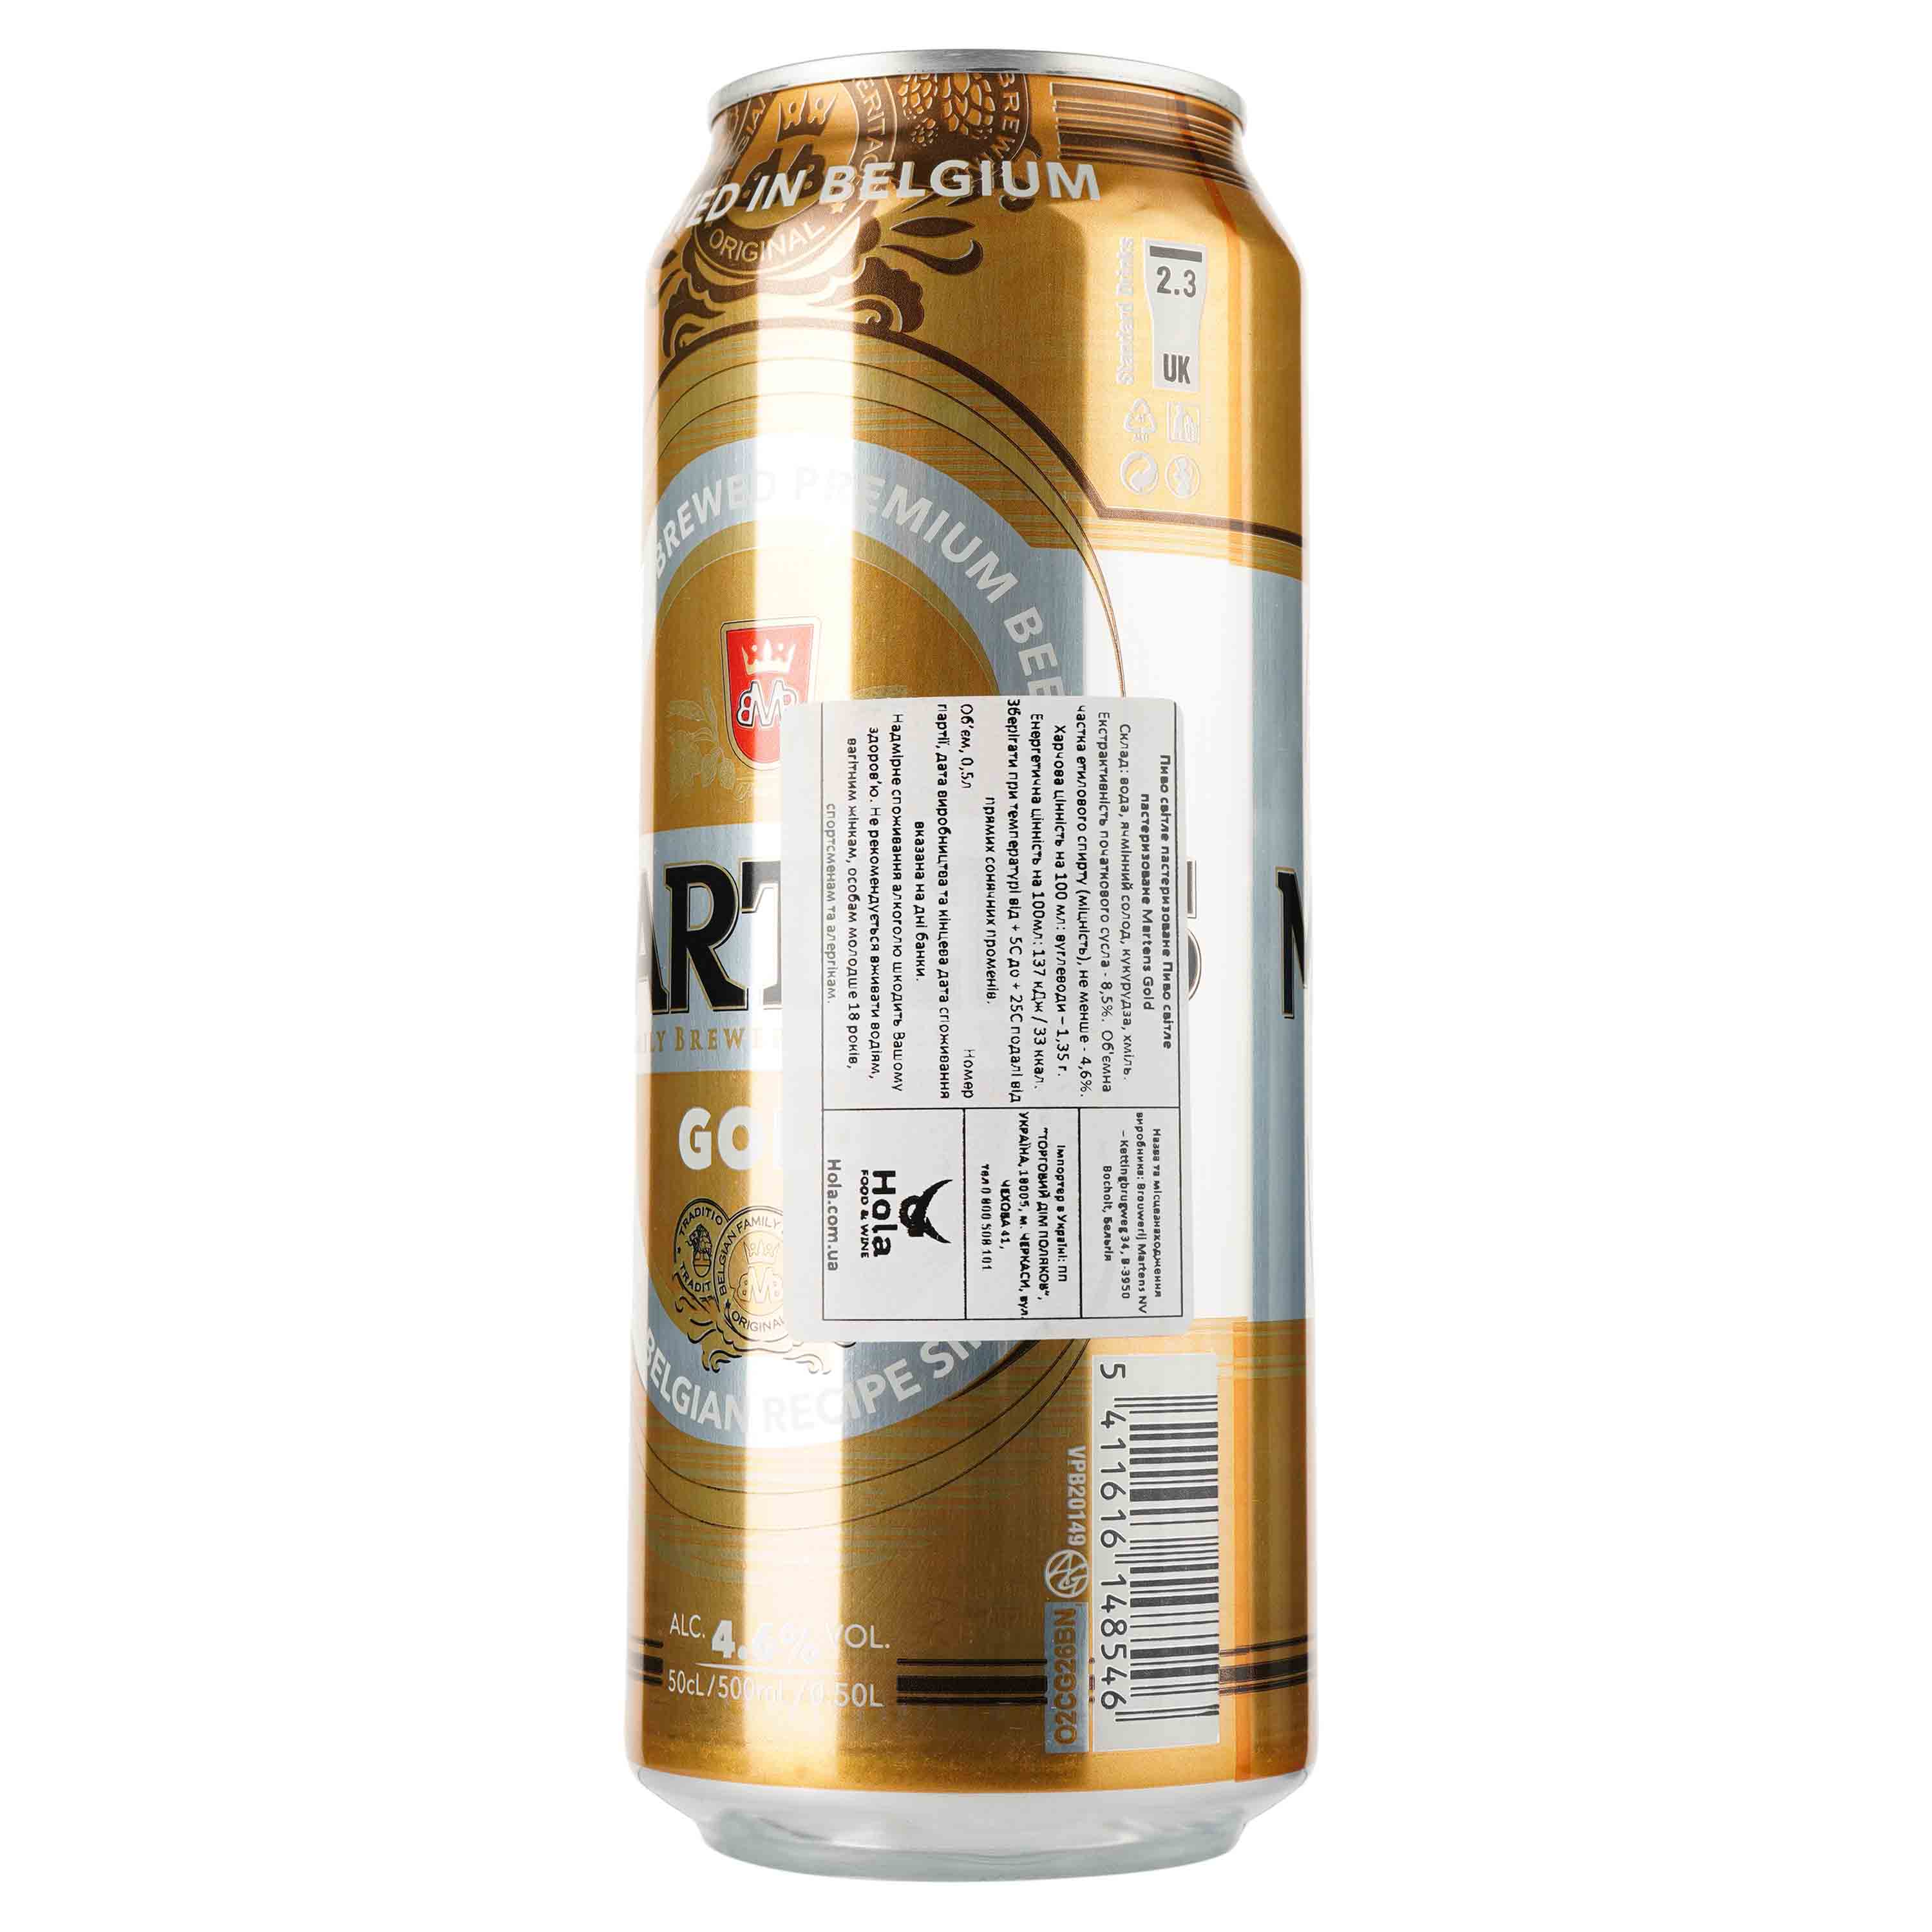 Пиво Martens Gold, світле, фільтроване, 4,6%, з/б, 0,5 л - фото 2